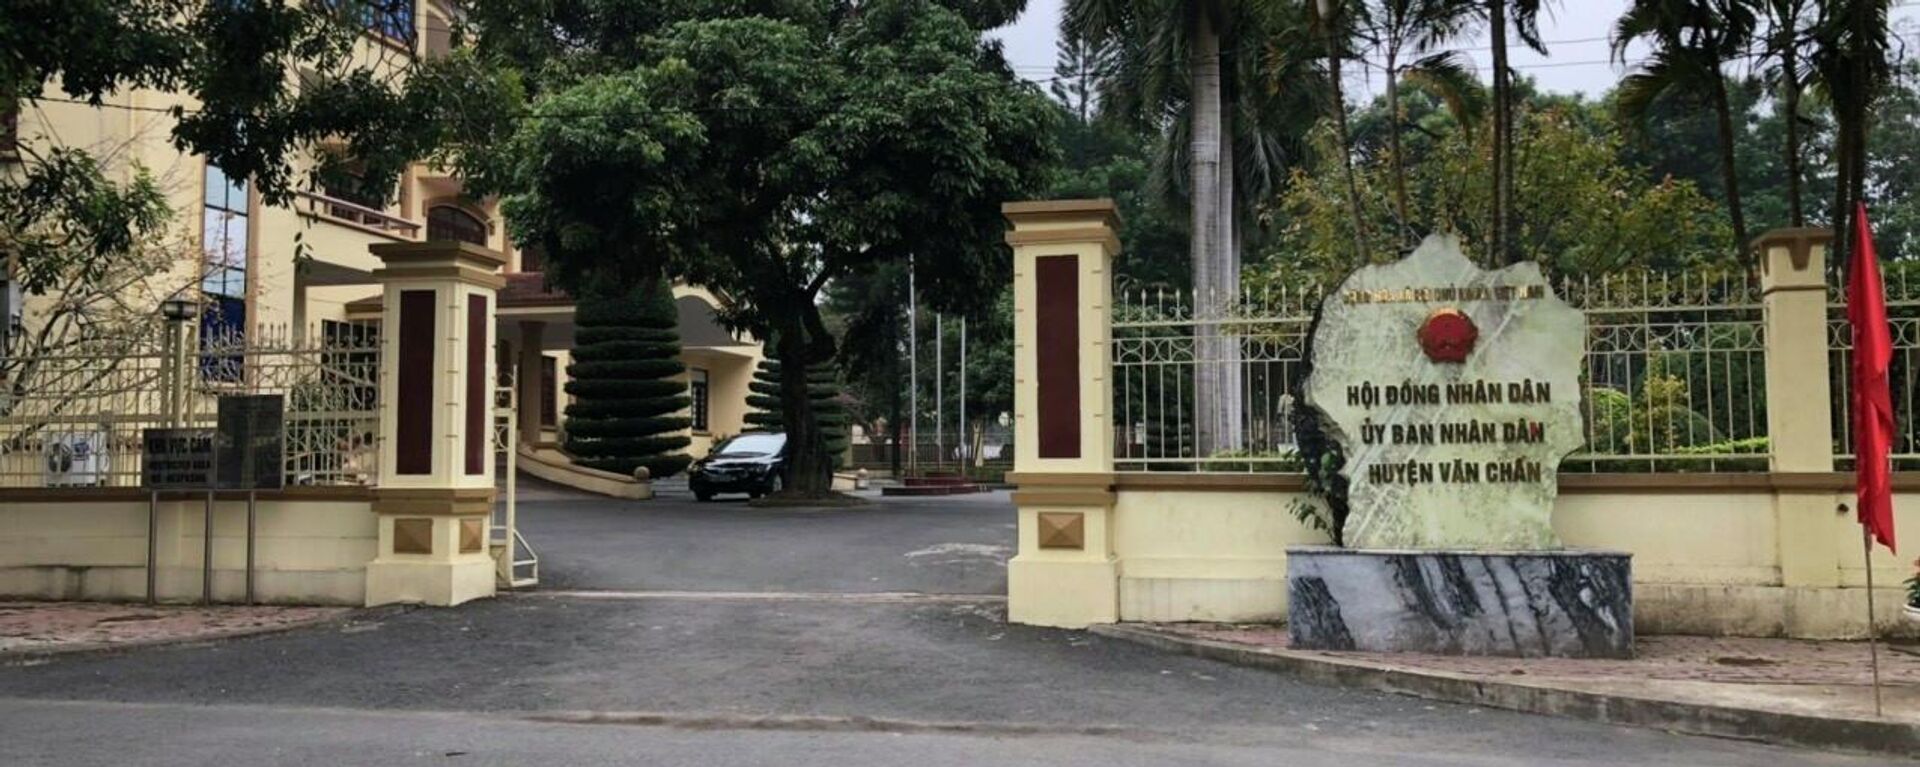 Trụ sở Hội đồng nhân dân, Ủy ban nhân dân huyện Văn Chấn (Yên Bái), nơi ông Nông Ích Chấn công tác trước khi bị bắt tạm giam - Sputnik Việt Nam, 1920, 17.02.2022